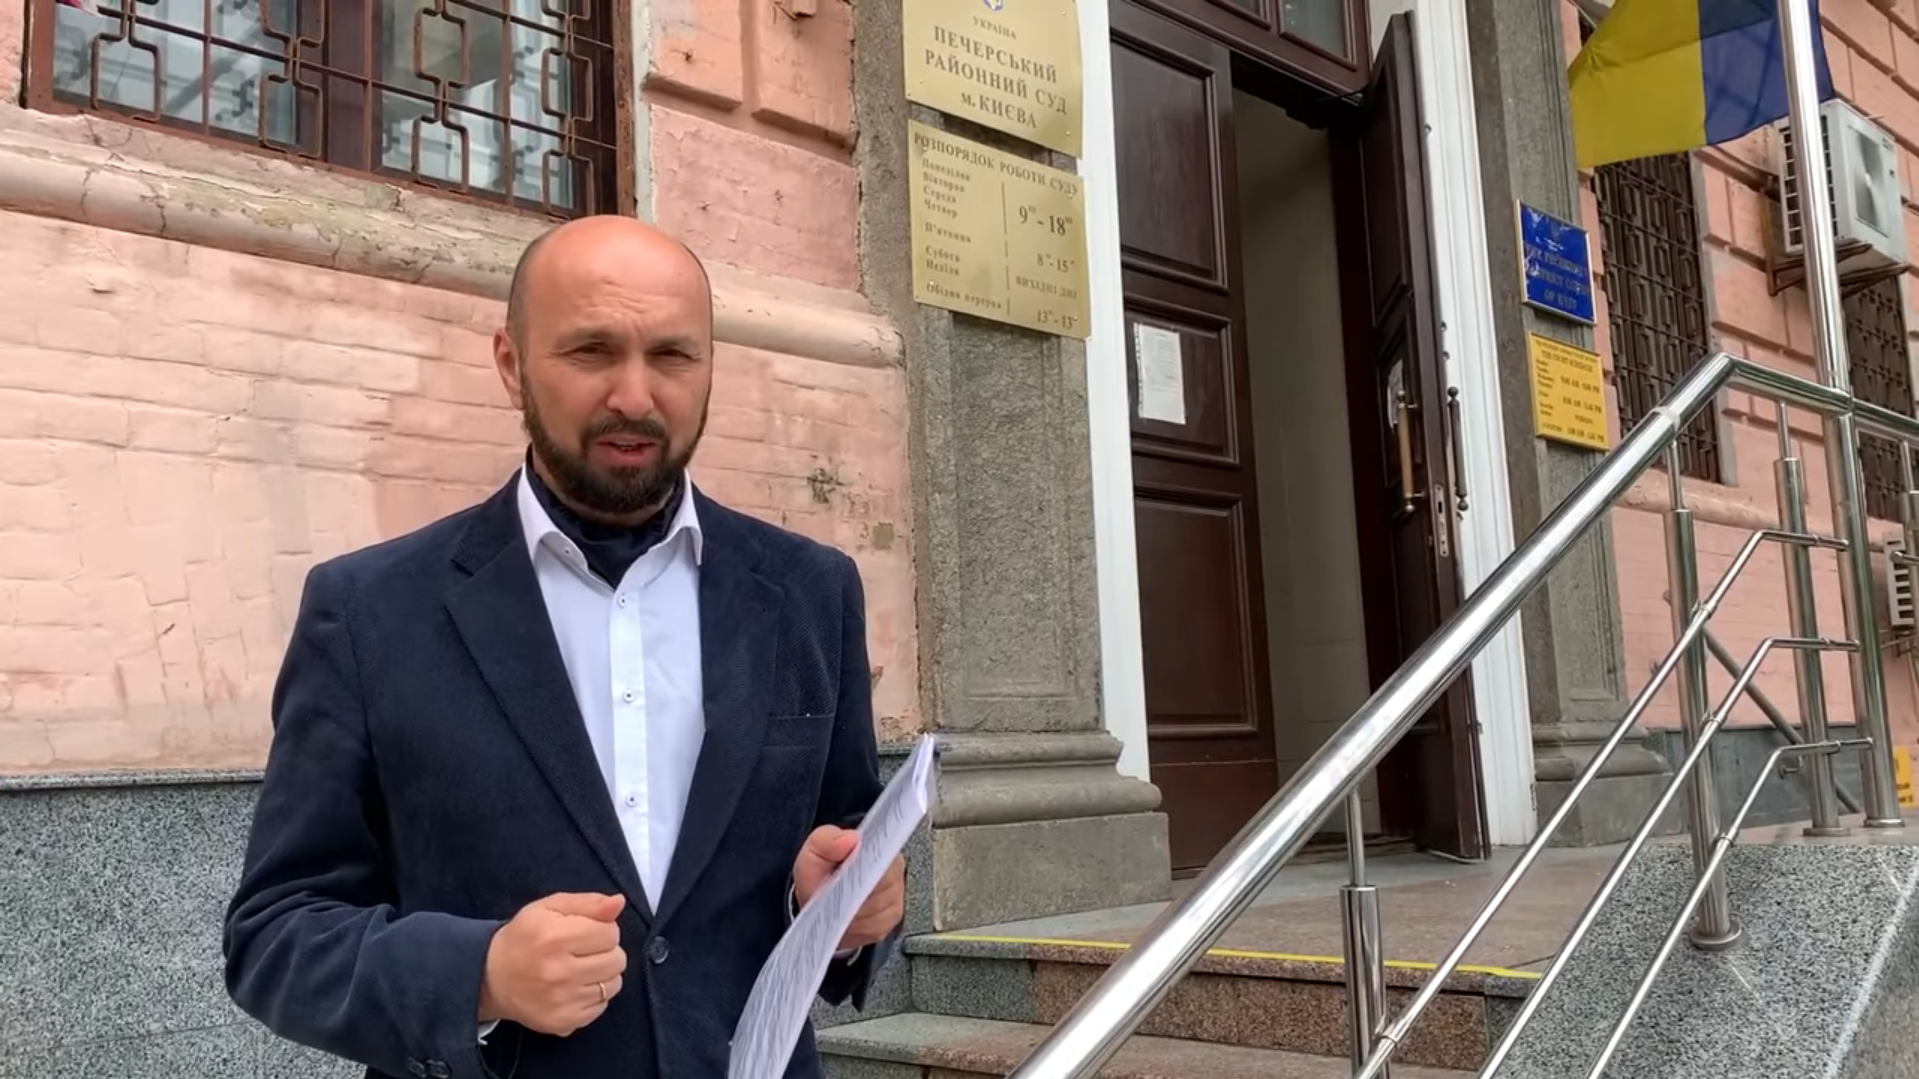 Городской голова Черкасс подал иск против Зеленского и требует 1 гривну компенсации — адвокат